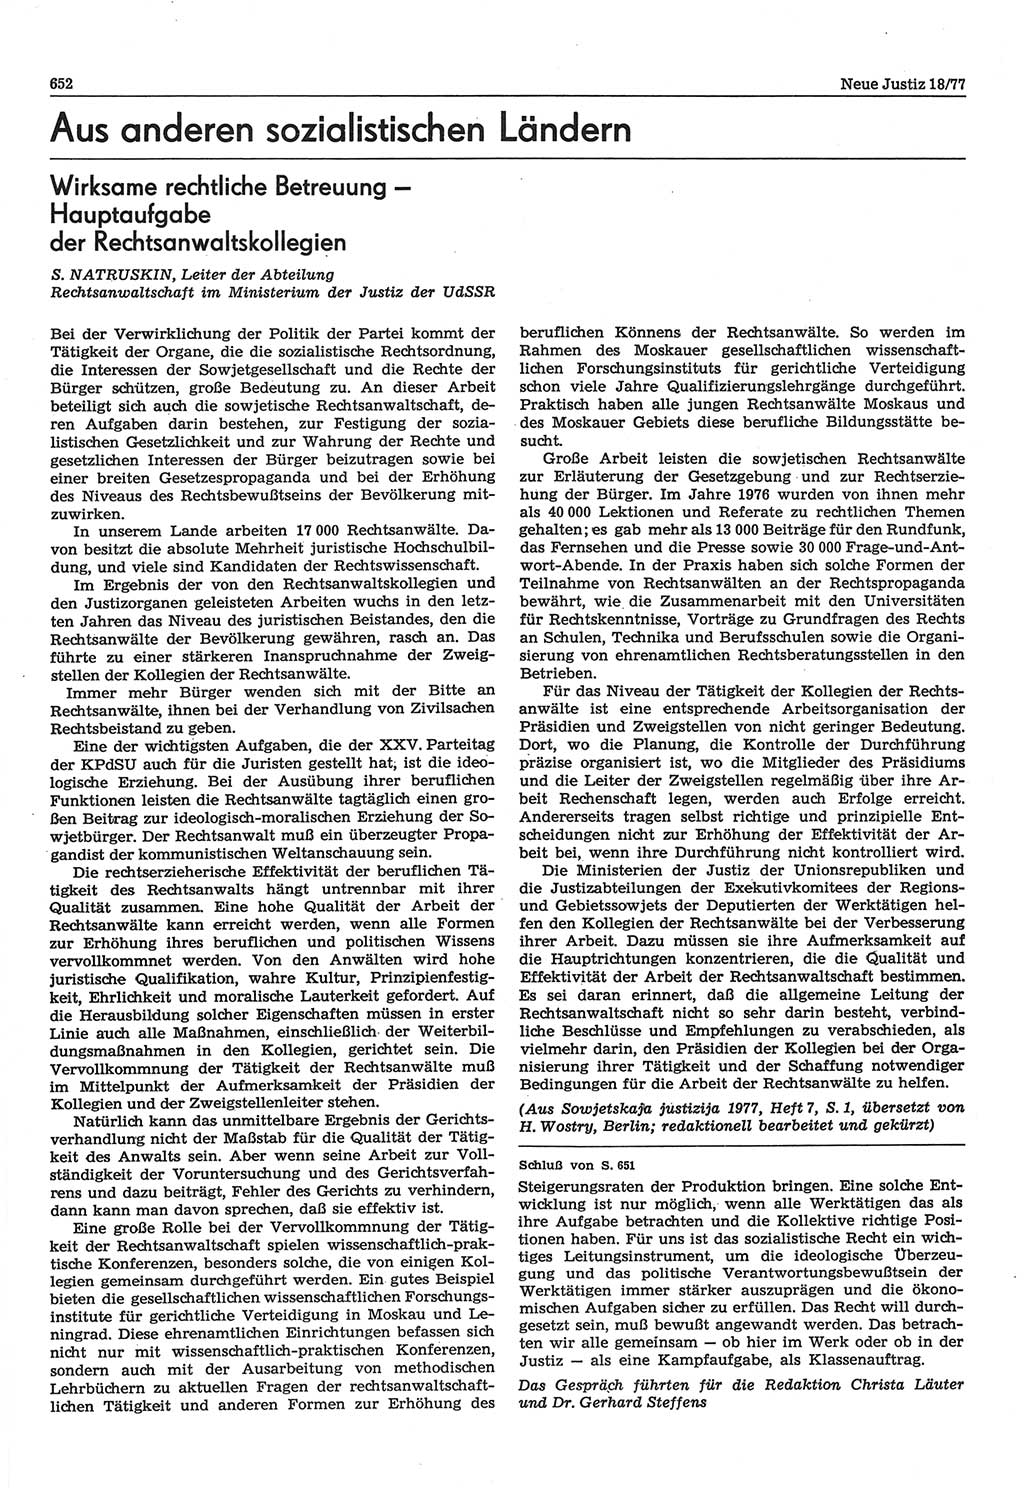 Neue Justiz (NJ), Zeitschrift für Recht und Rechtswissenschaft-Zeitschrift, sozialistisches Recht und Gesetzlichkeit, 31. Jahrgang 1977, Seite 652 (NJ DDR 1977, S. 652)